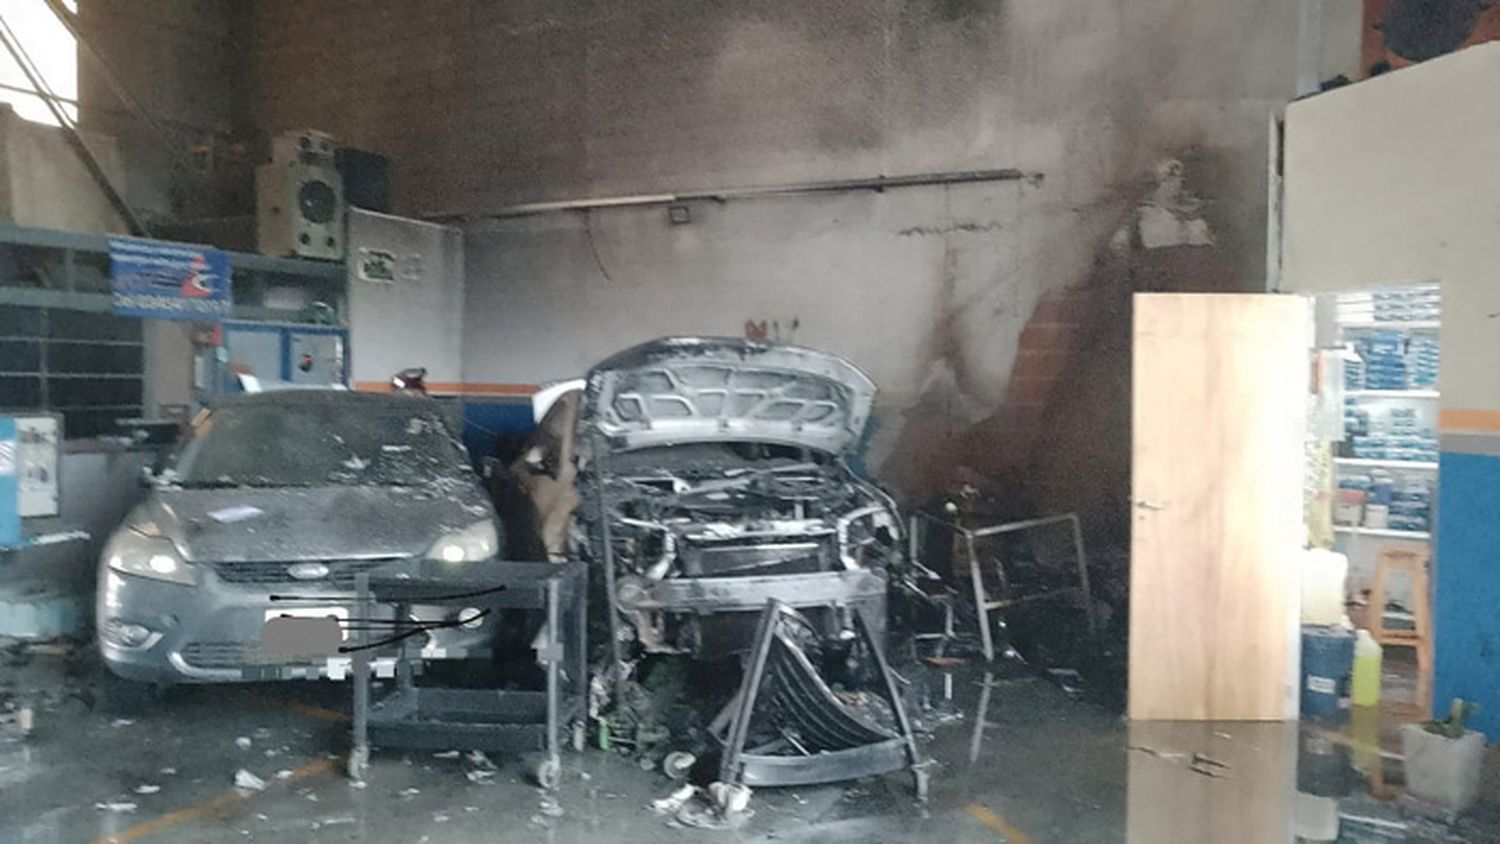 Bomberos Voluntarios acudió a un incendio en taller mecánico que causó daños significativos